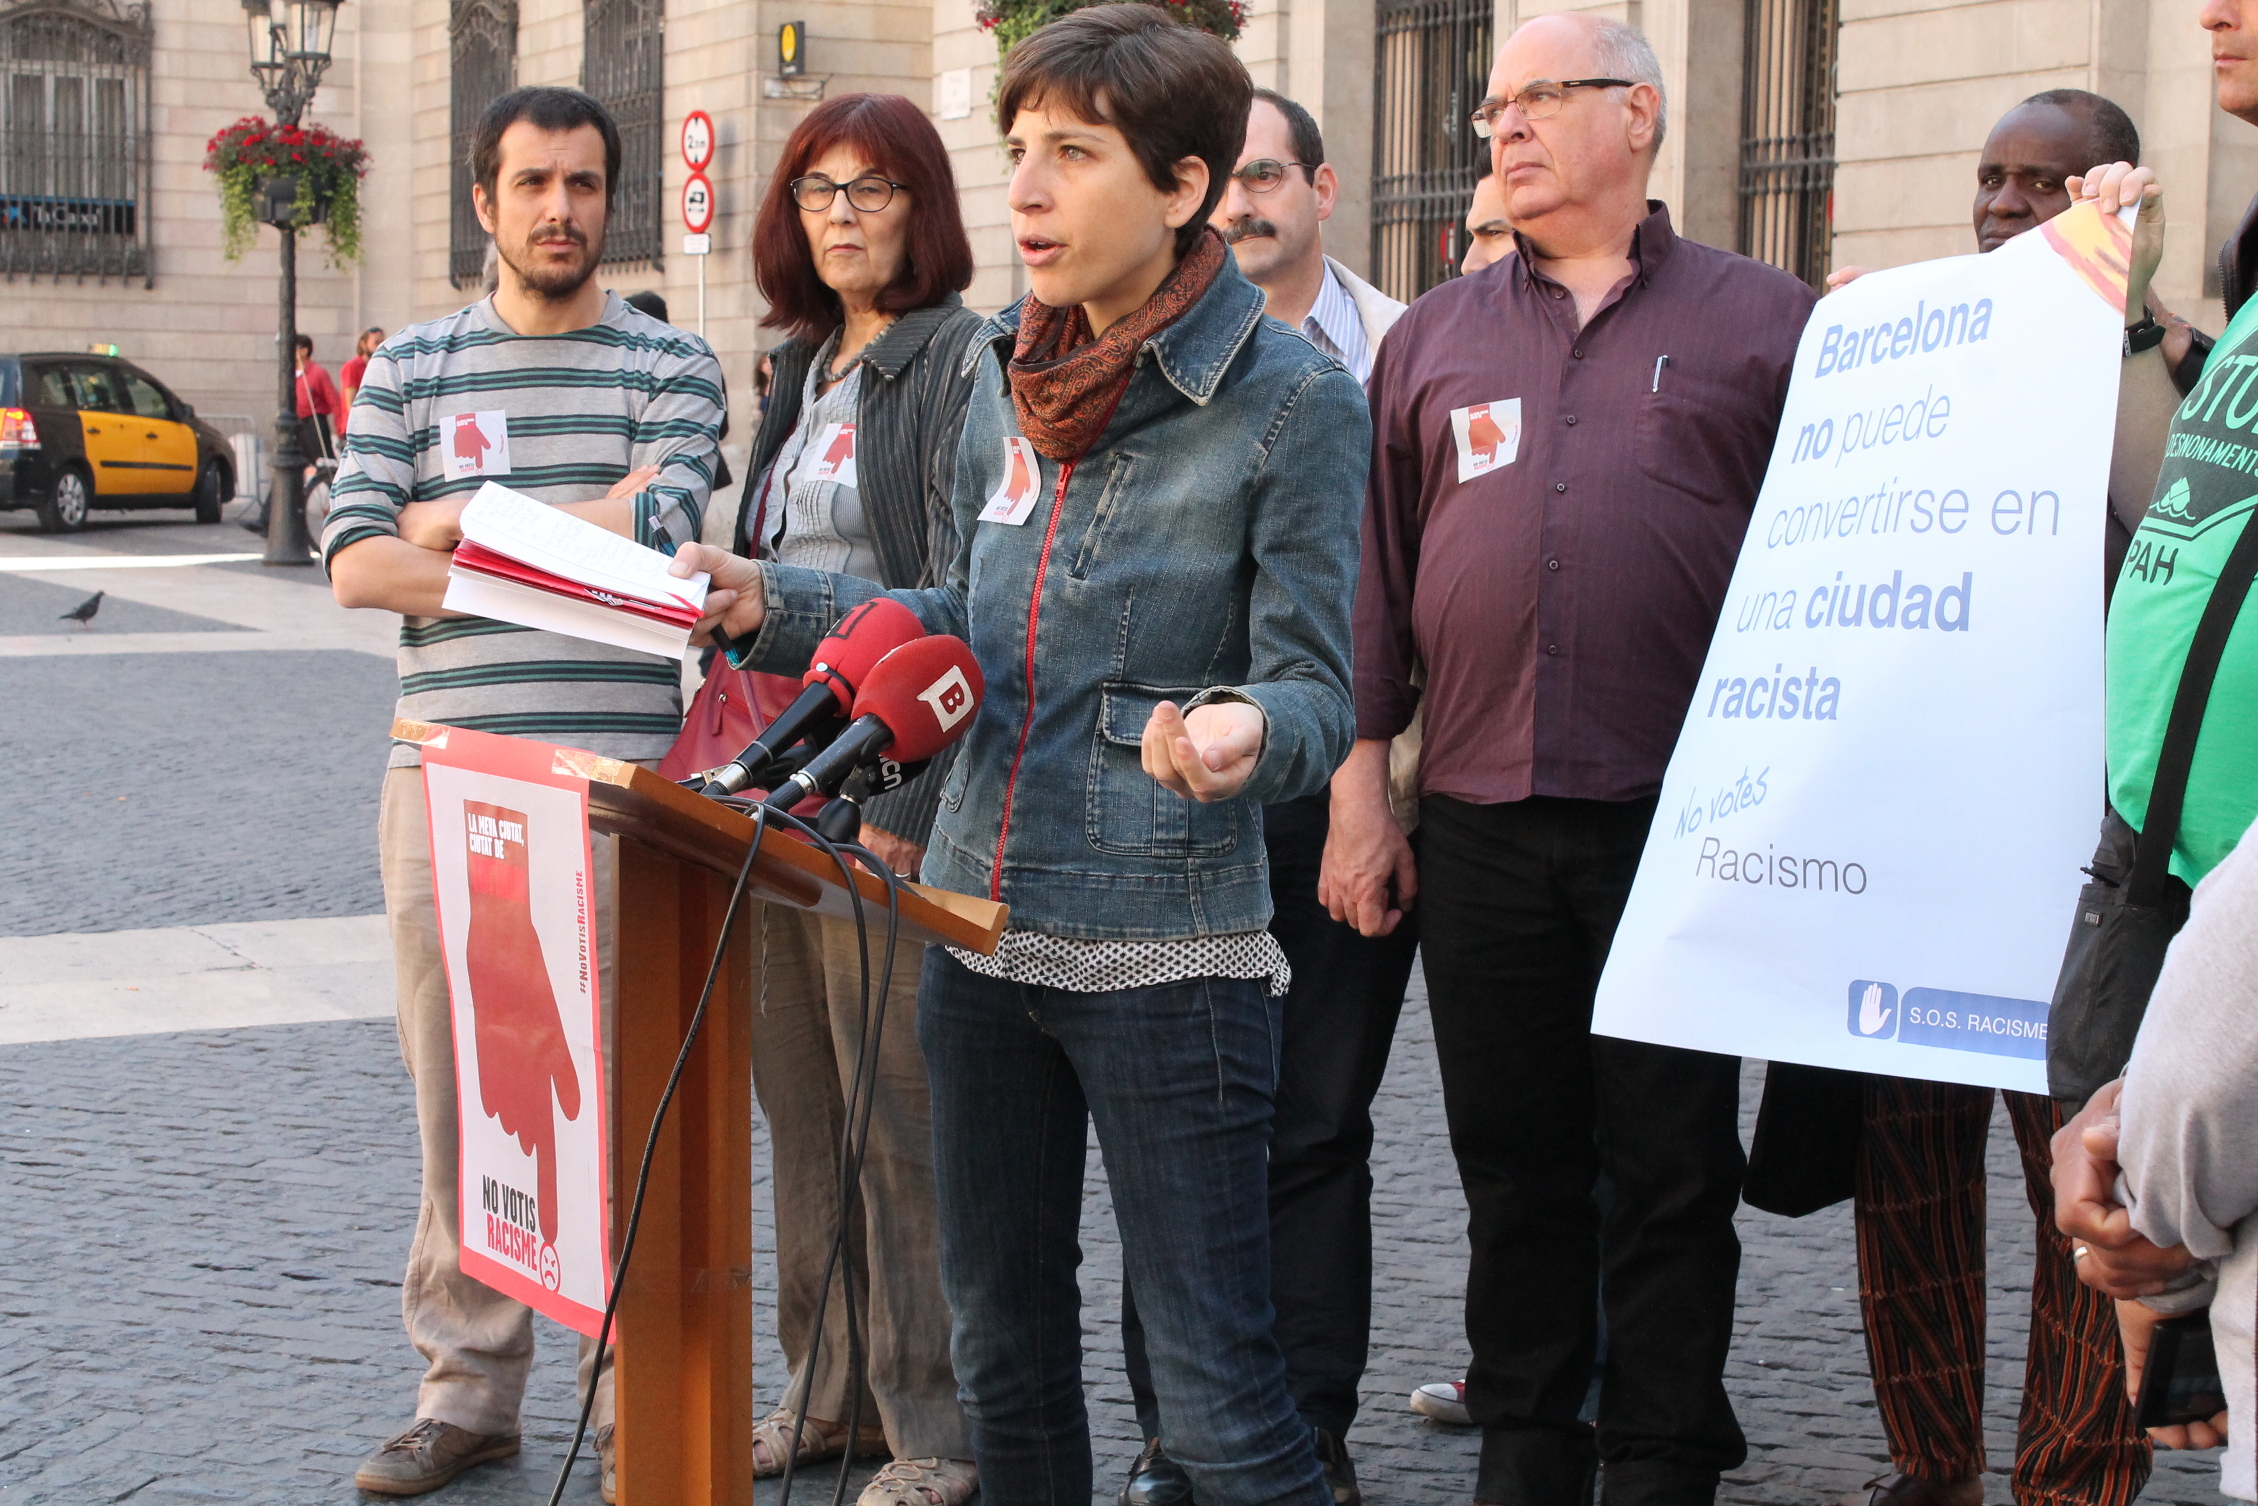 La societat civil organitzada rebutja contundentment el racisme i la xenofòbia del Partit Popular de Catalunya